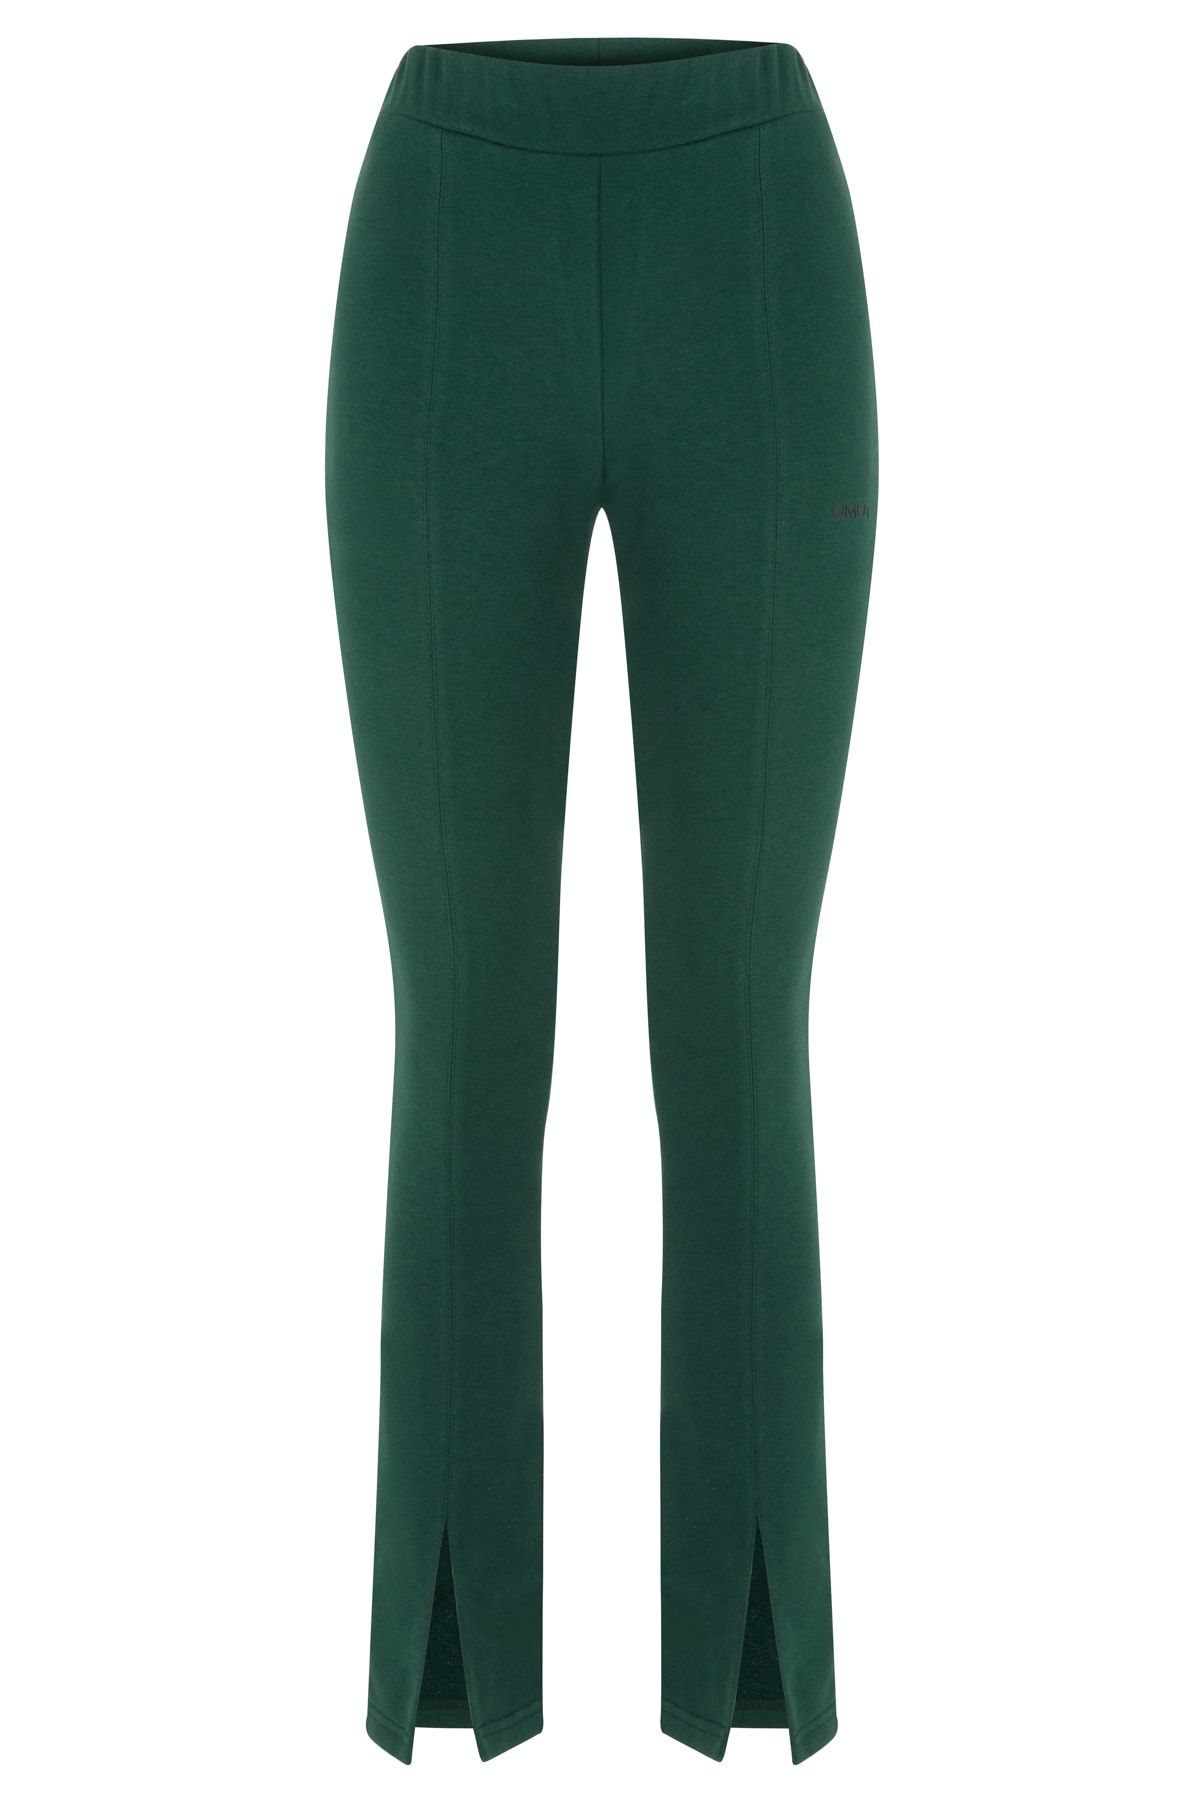 By Umut Design Önden Yırtmaçlı Ekstra Slim Zümrüt Yeşili Pantolon